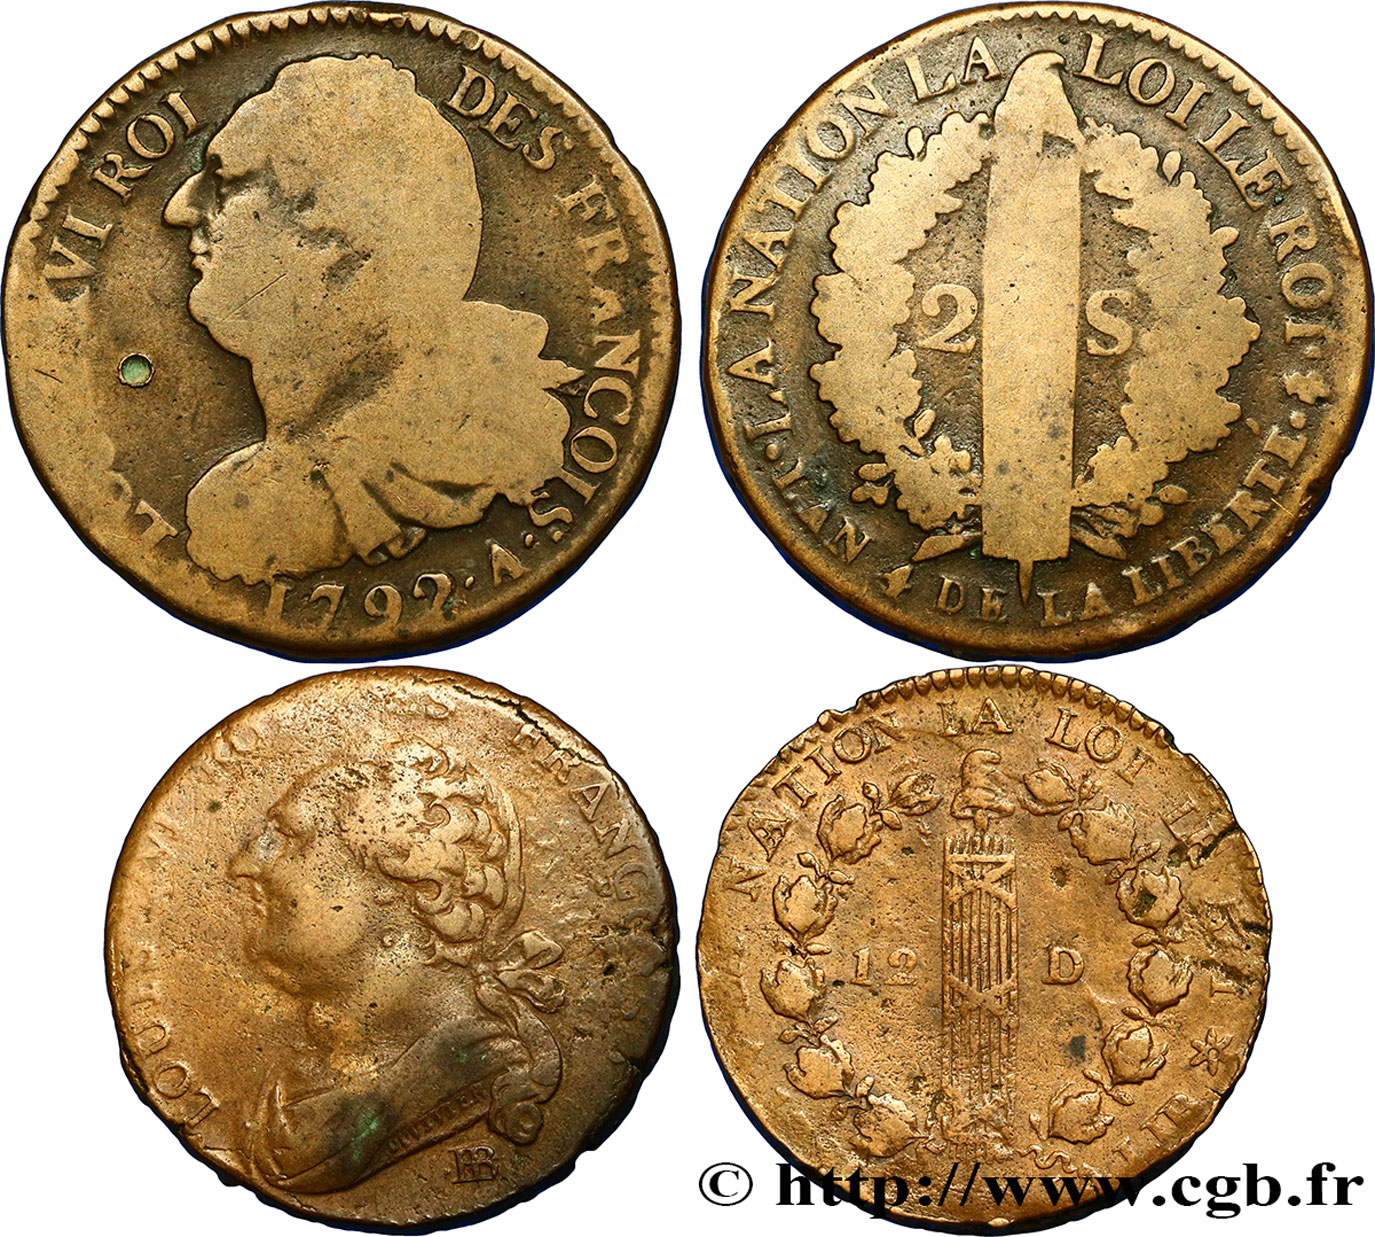 LOTS Lot de deux monnaies de la Révolution française n.d. s.l. S